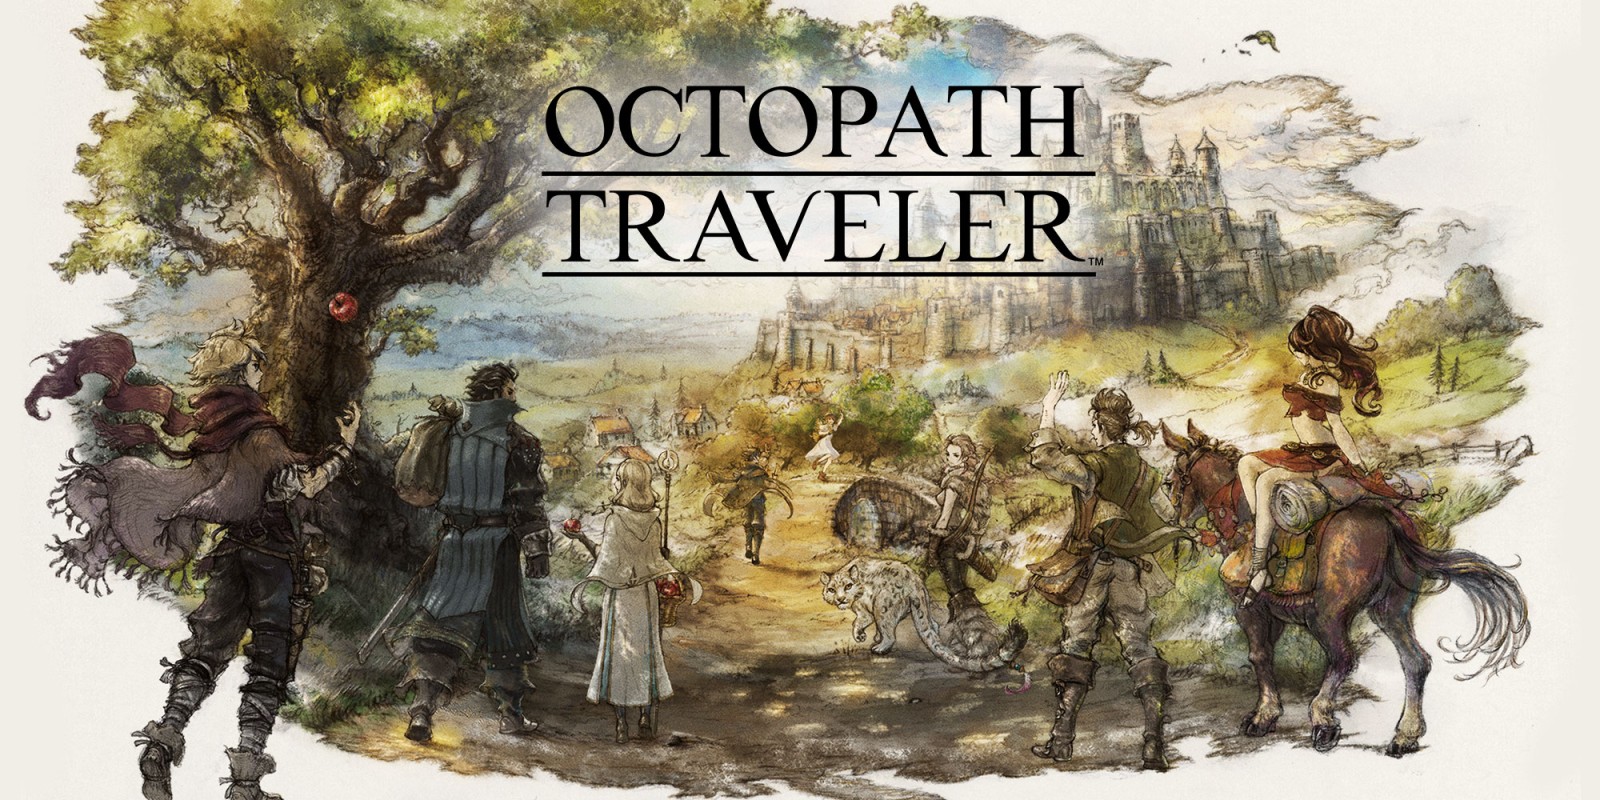 Octopath Traveler: Champions of the Continent verrà rilasciato su Android e iOS